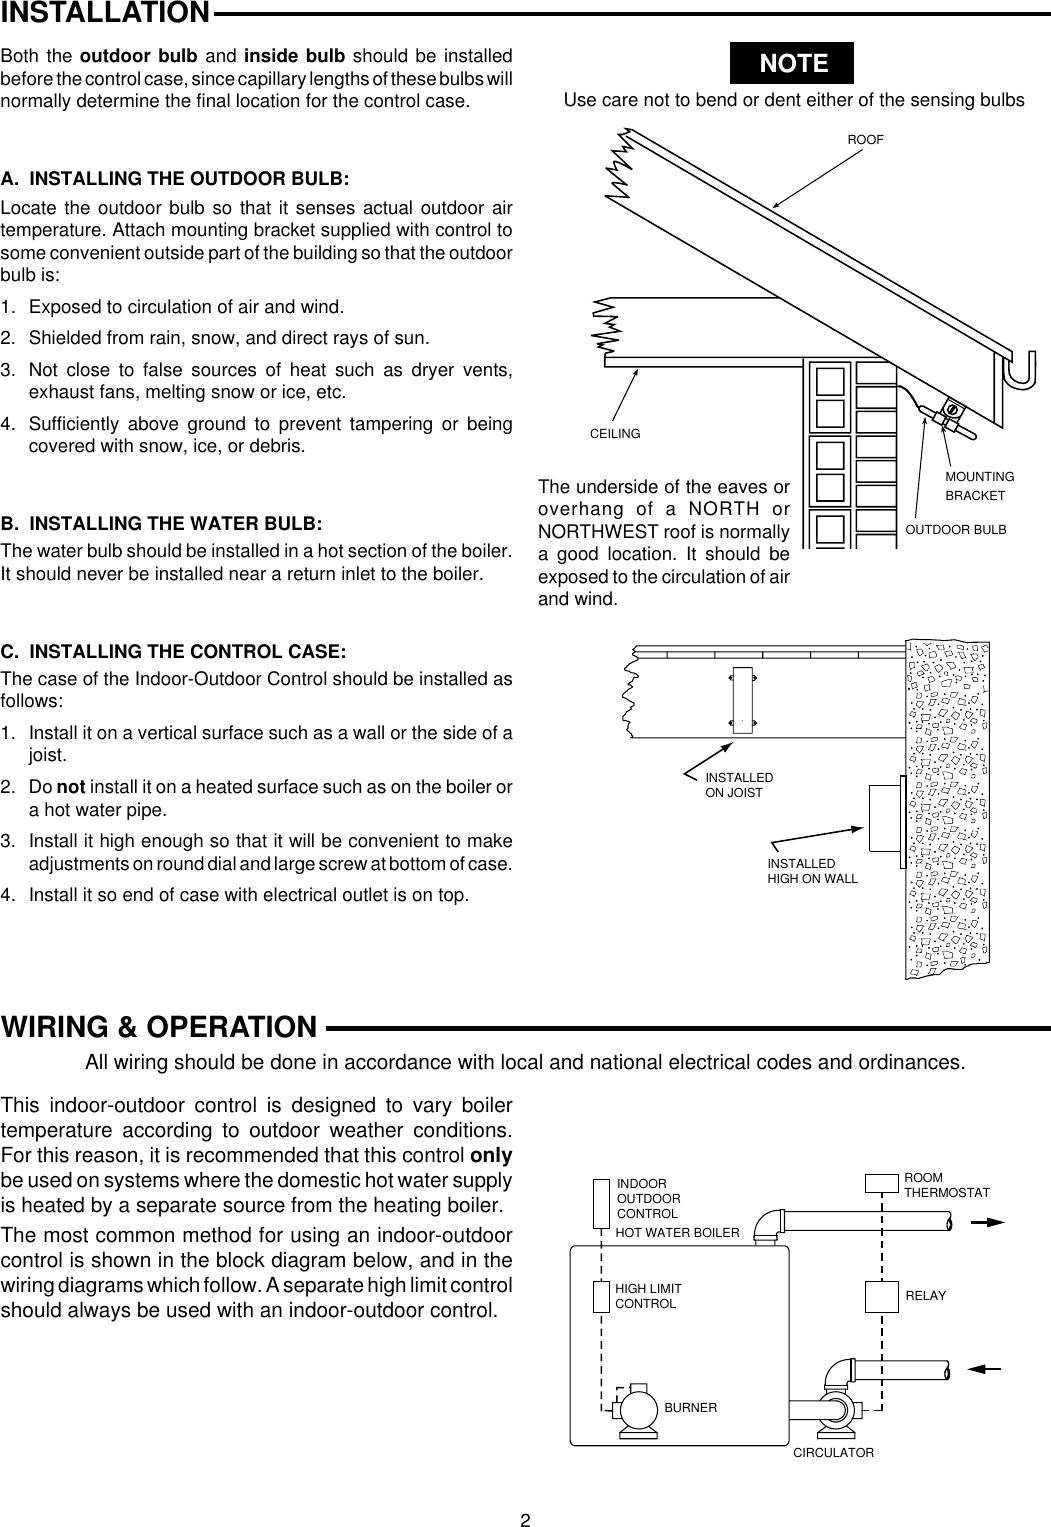 rth6580wf wiring diagram